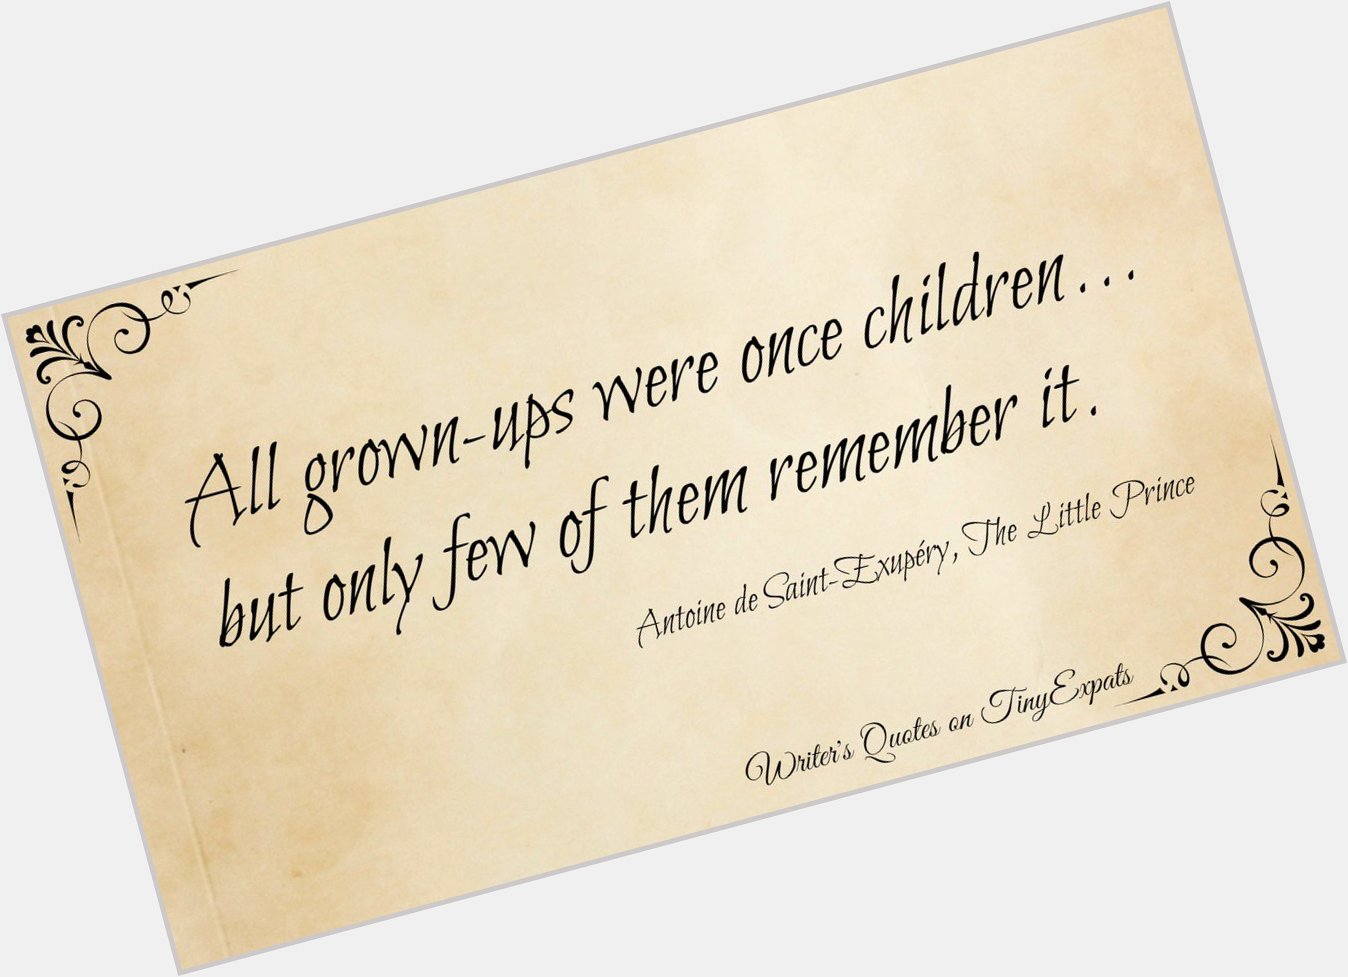 Happy Birthday to The Little Prince author, Antoine de Saint Exupery! 